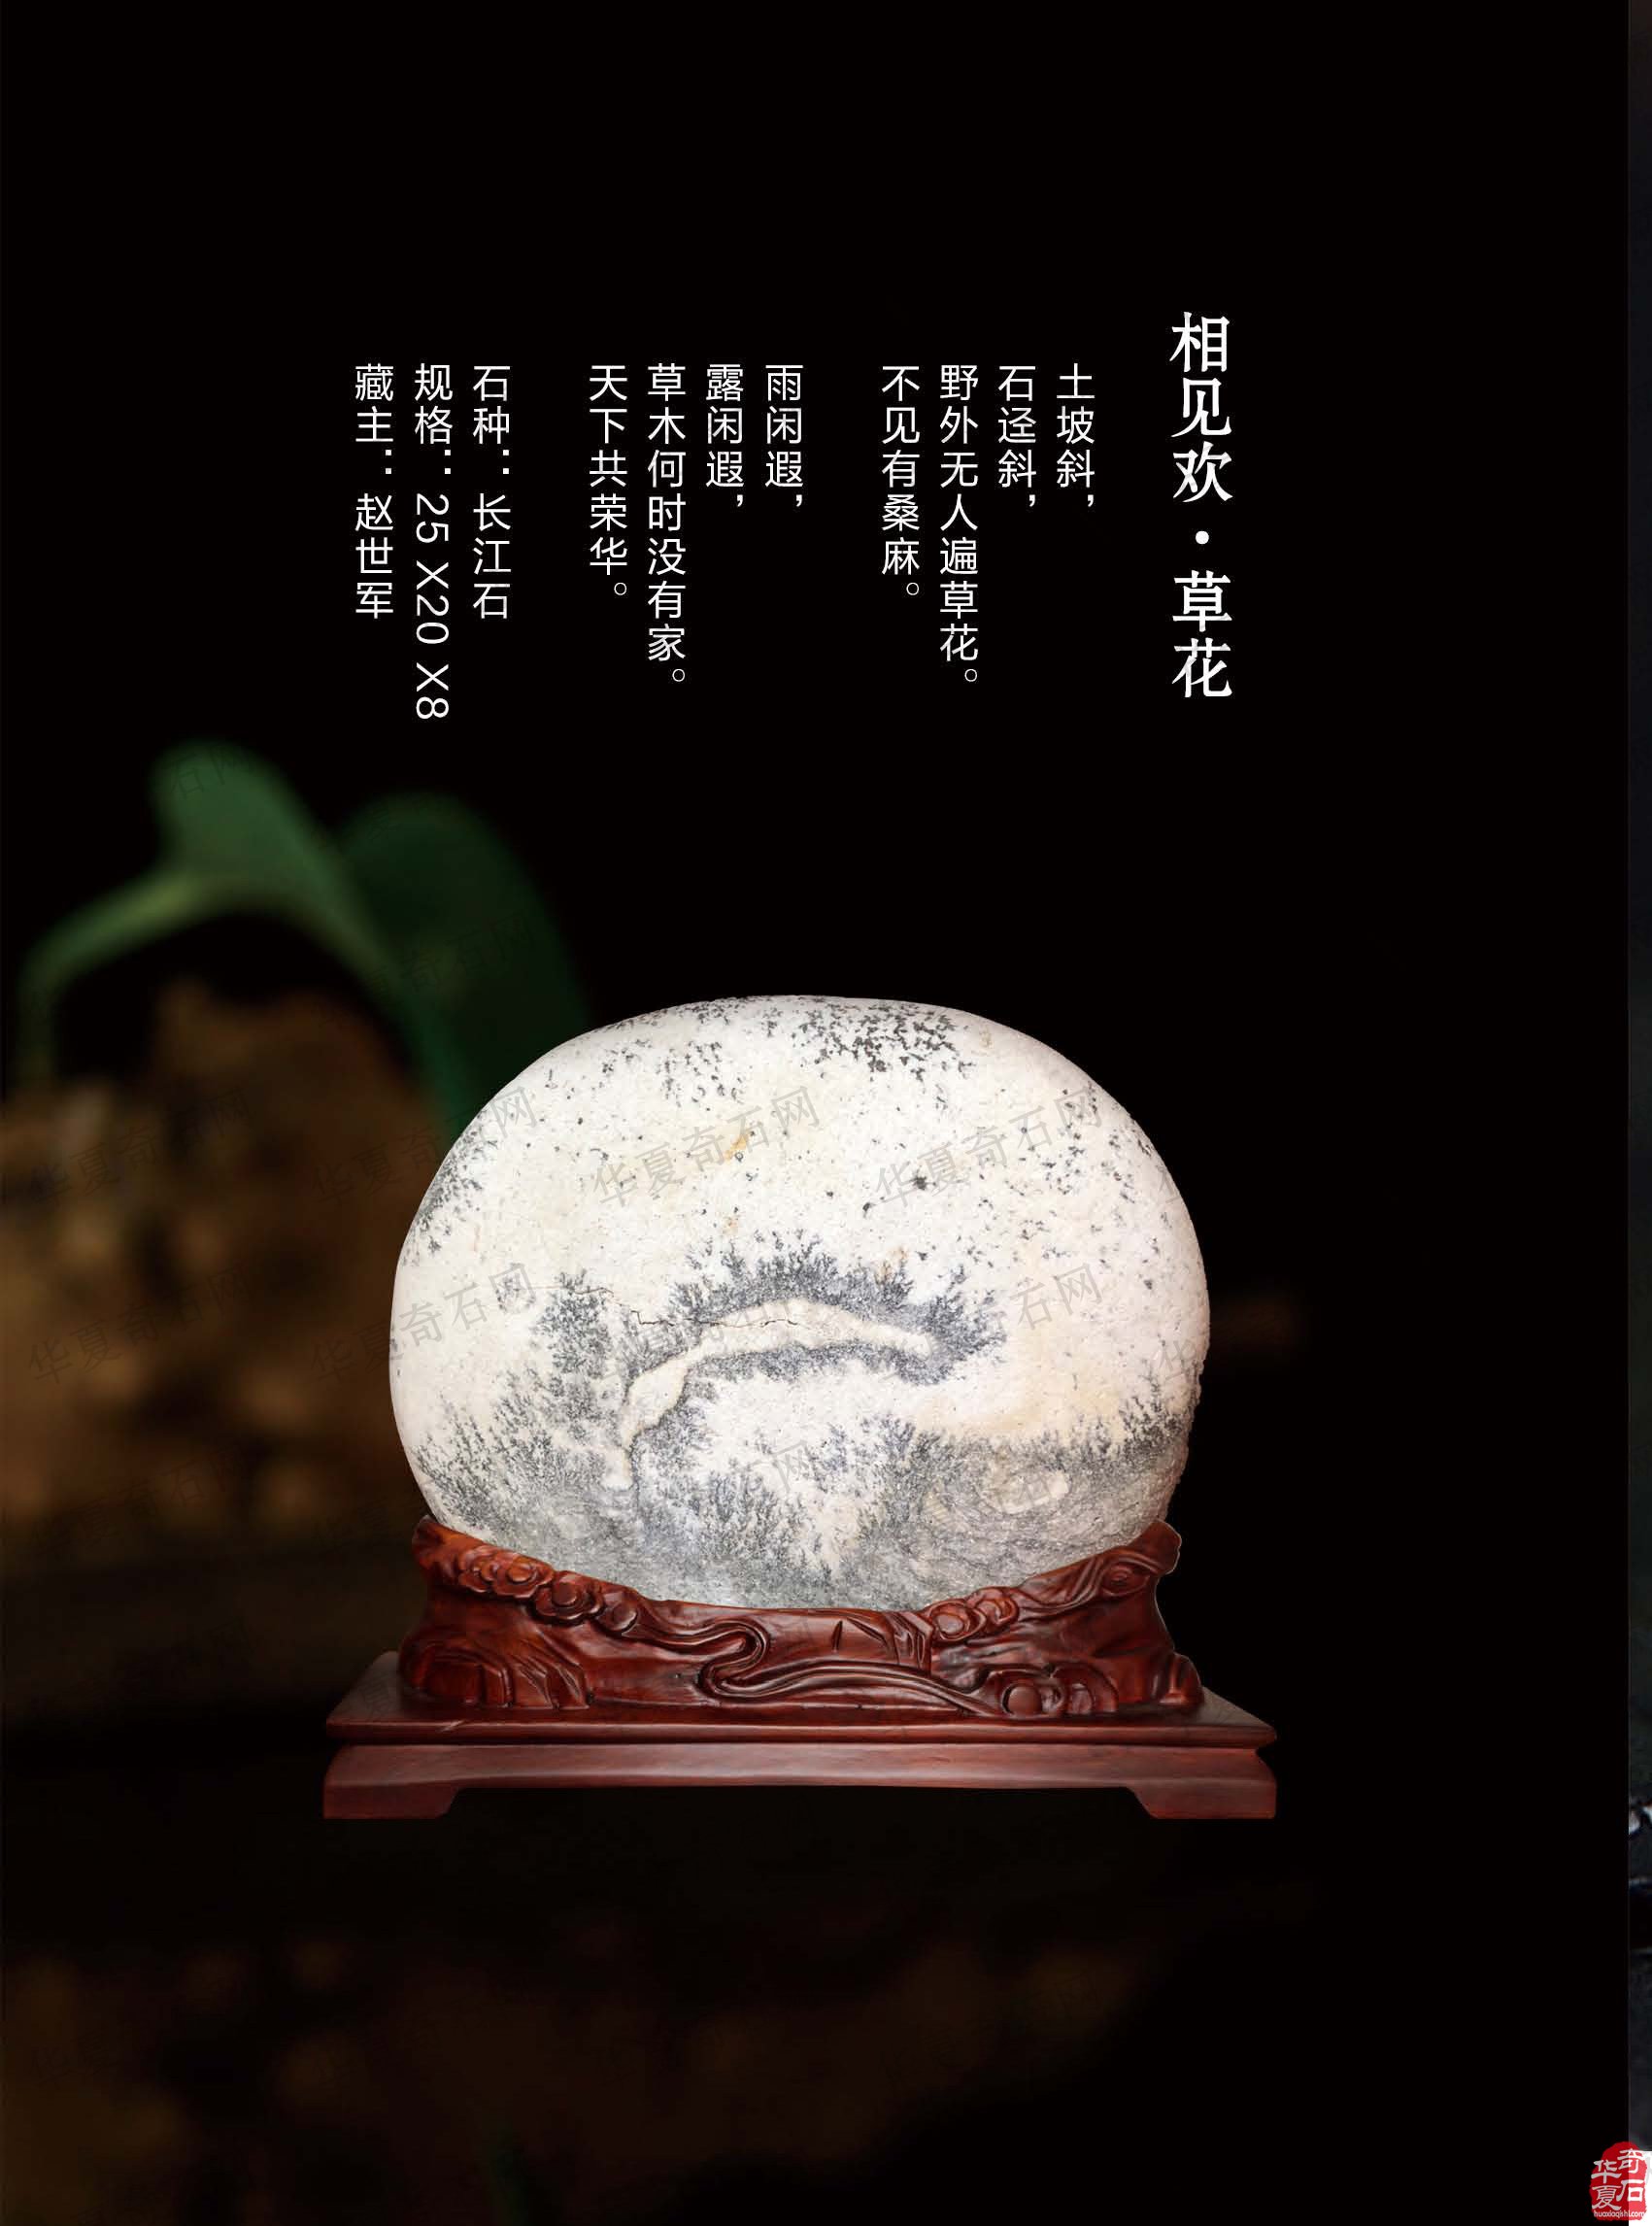 欣赏《于公赏石》杂志推介的大秦奇石艺术馆